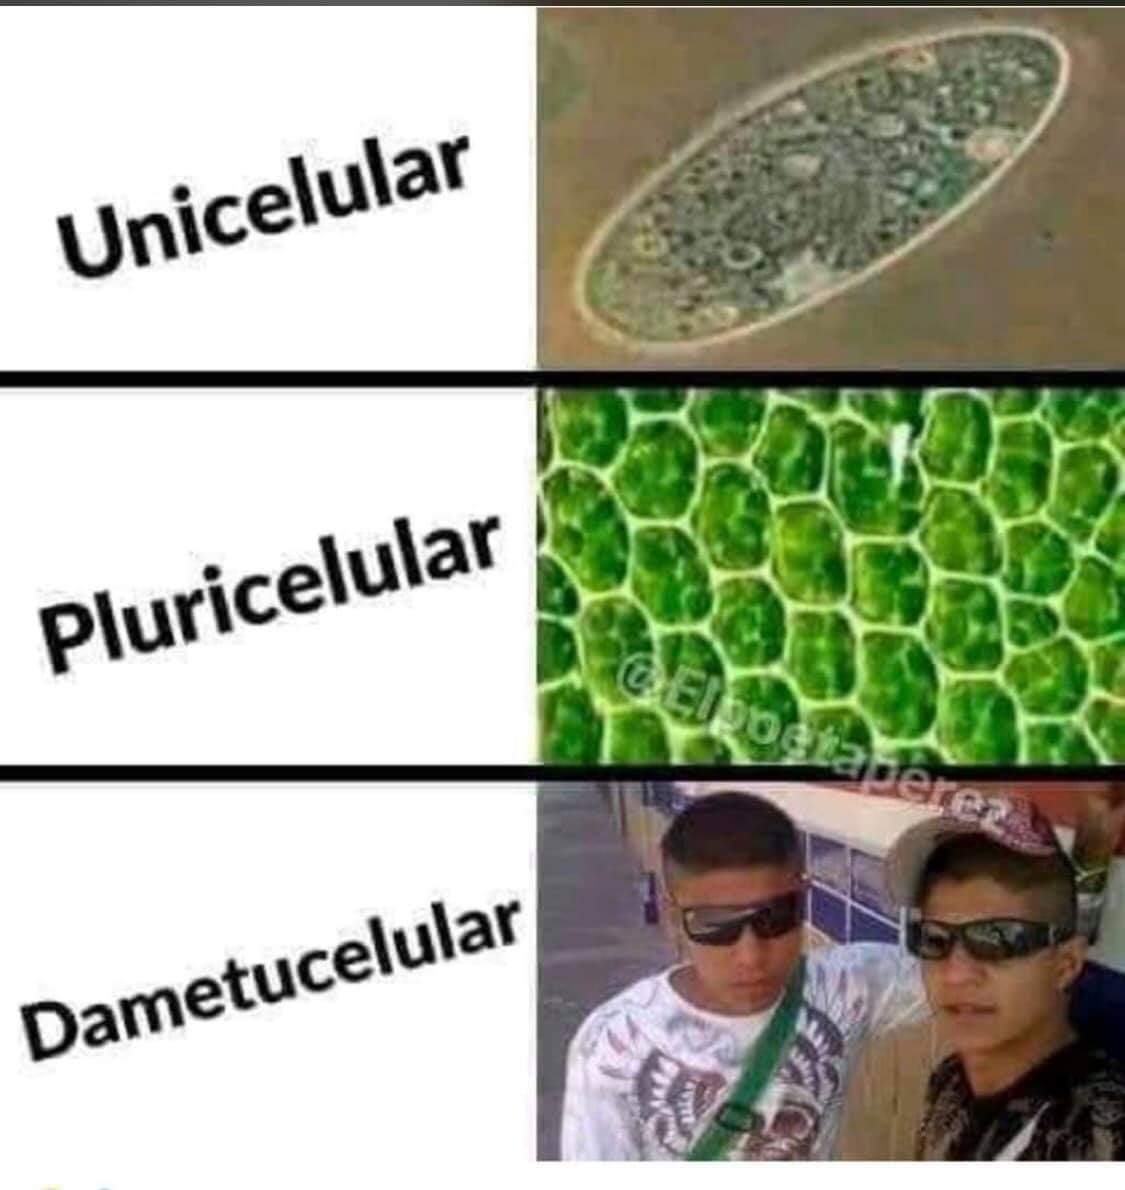 Cell - meme